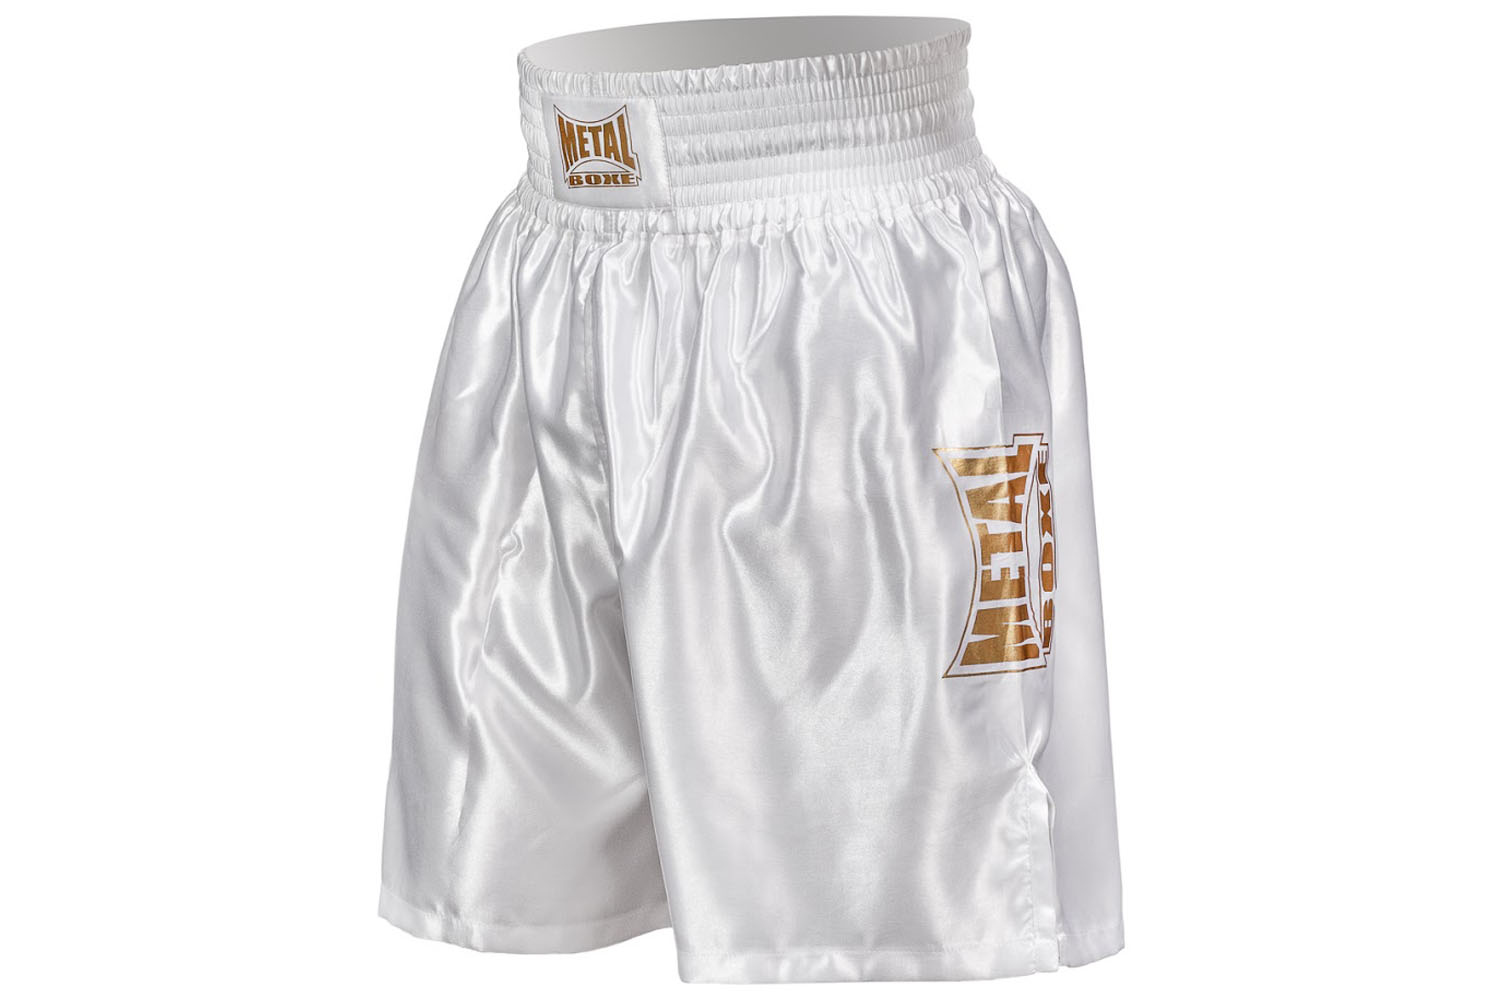 Pantalones cortos de boxeo de competición - Sport performance, Everlast 